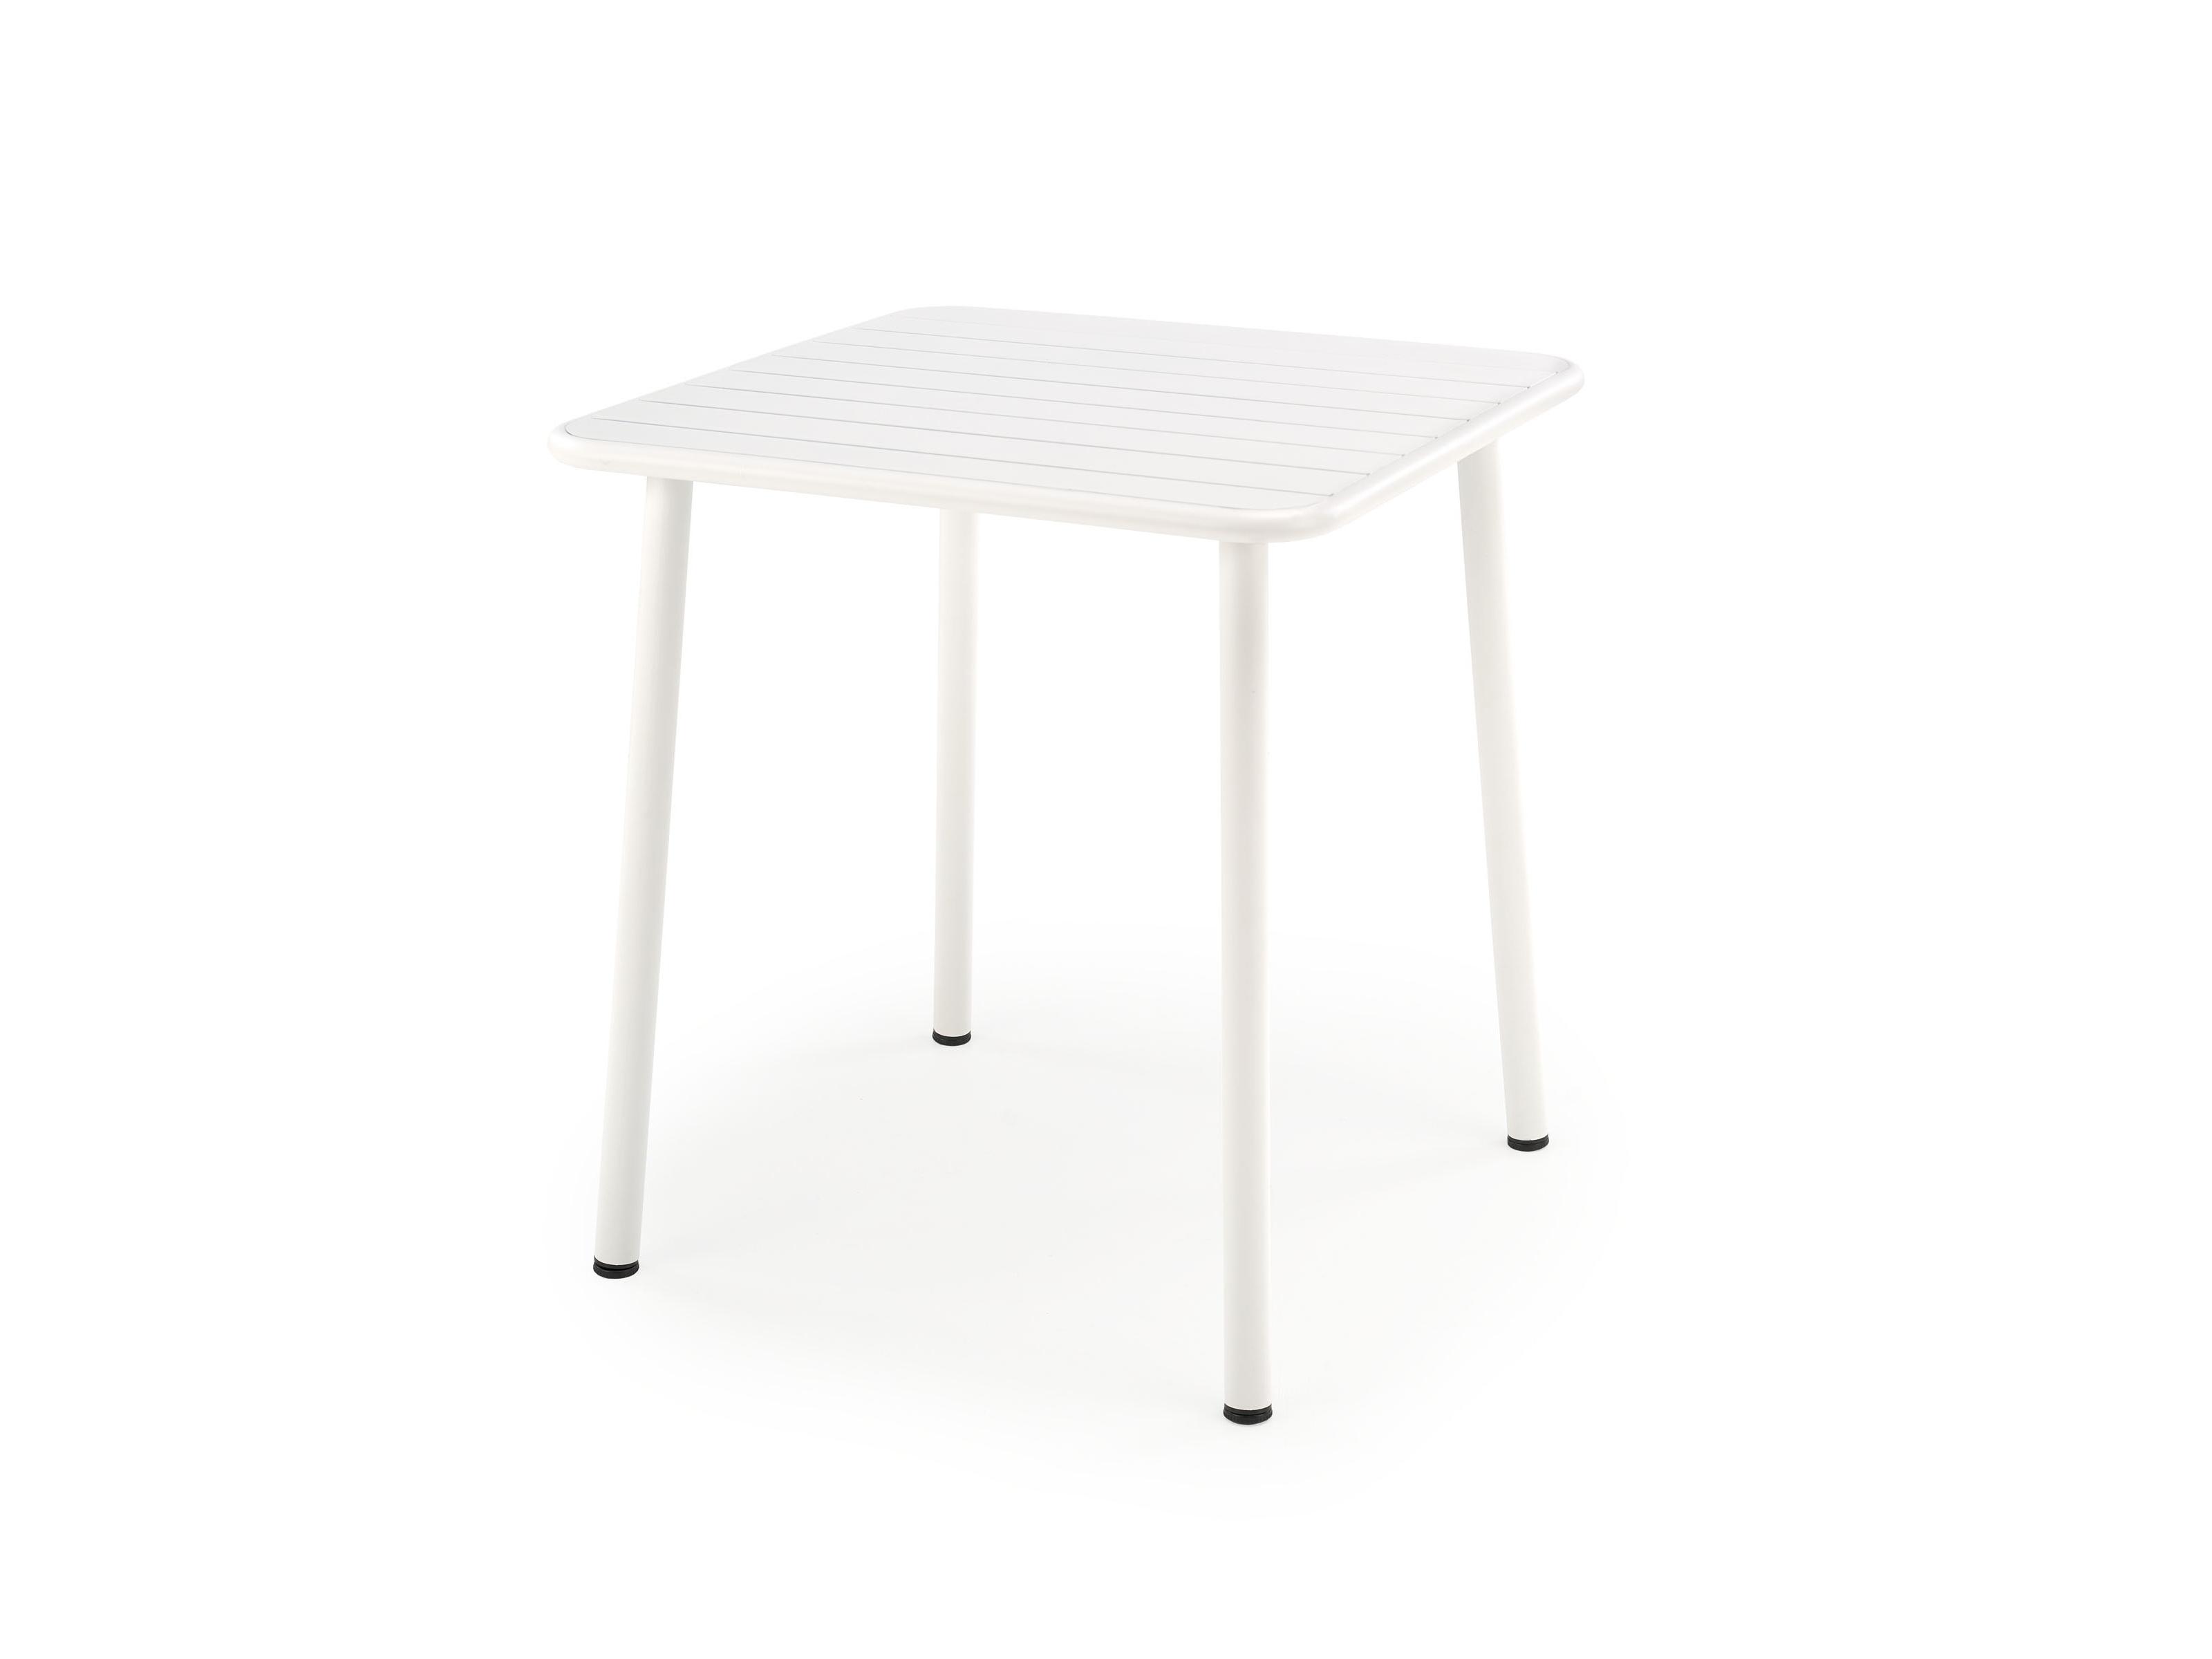 Zahradní stůl Basto 2 (bílá) (pro 2 osoby)